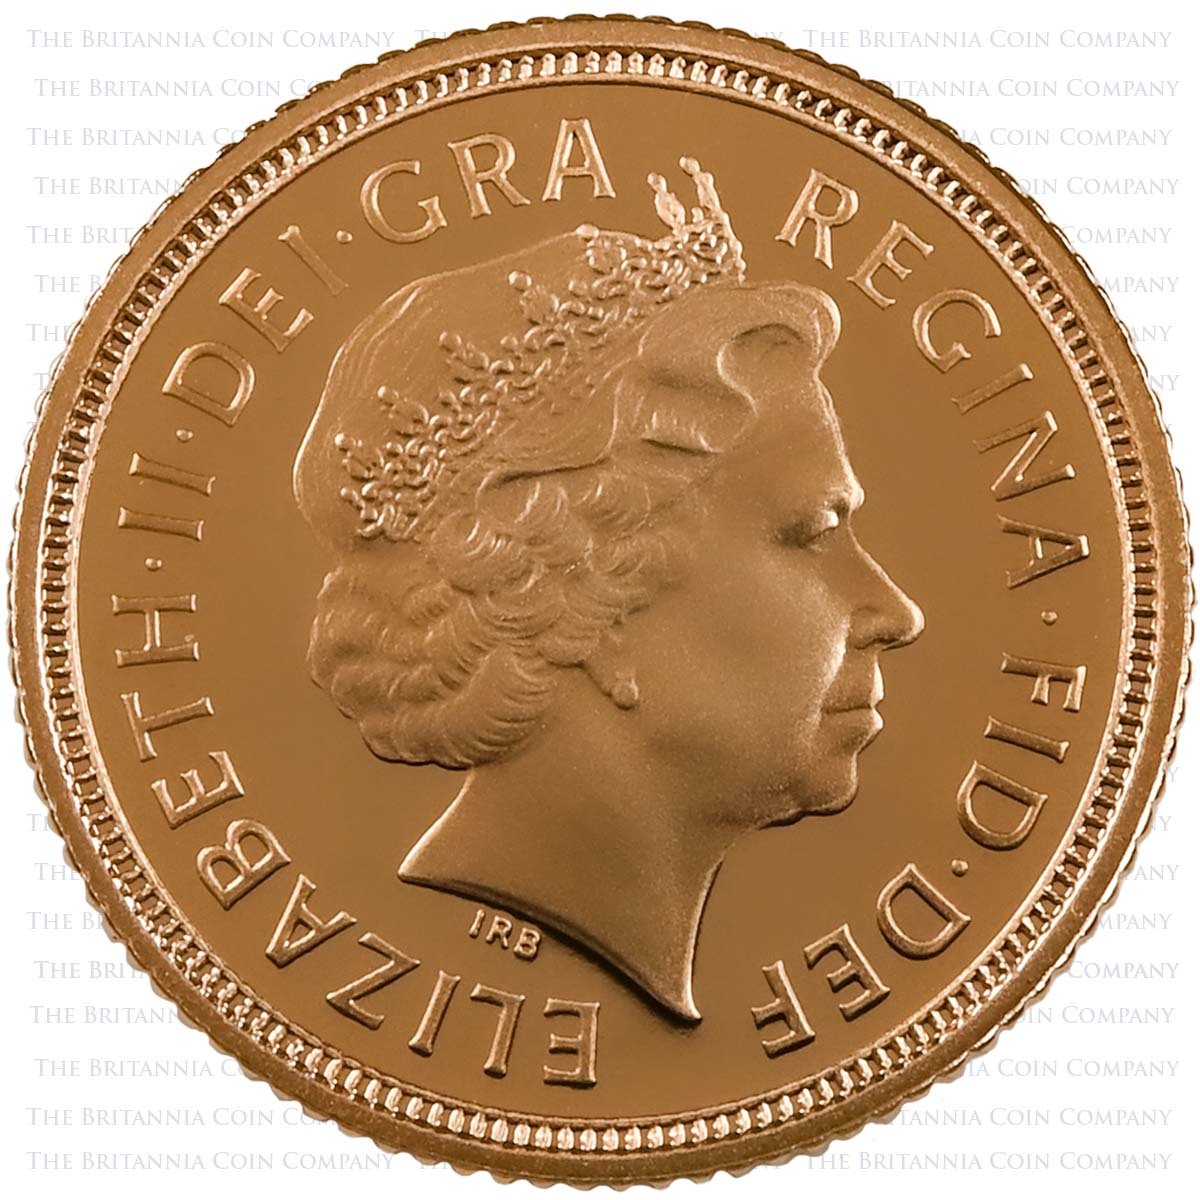 2004 Elizabeth II Gold Proof Half Sovereign Obverse